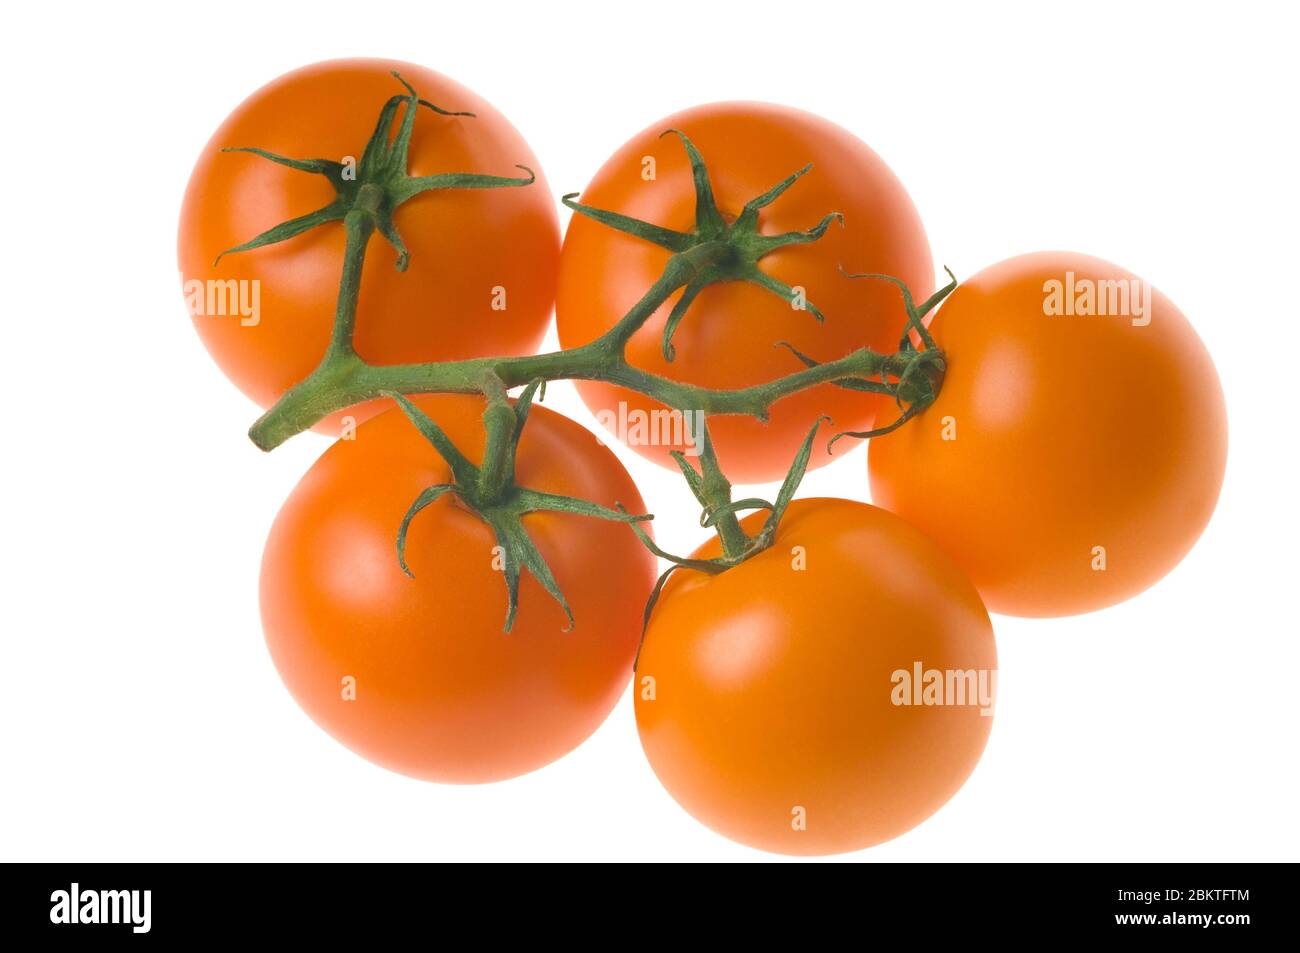 Bouquet de tomates fraîches mûres à tige verte, isolées sur fond blanc. Prise de vue en studio. Banque D'Images